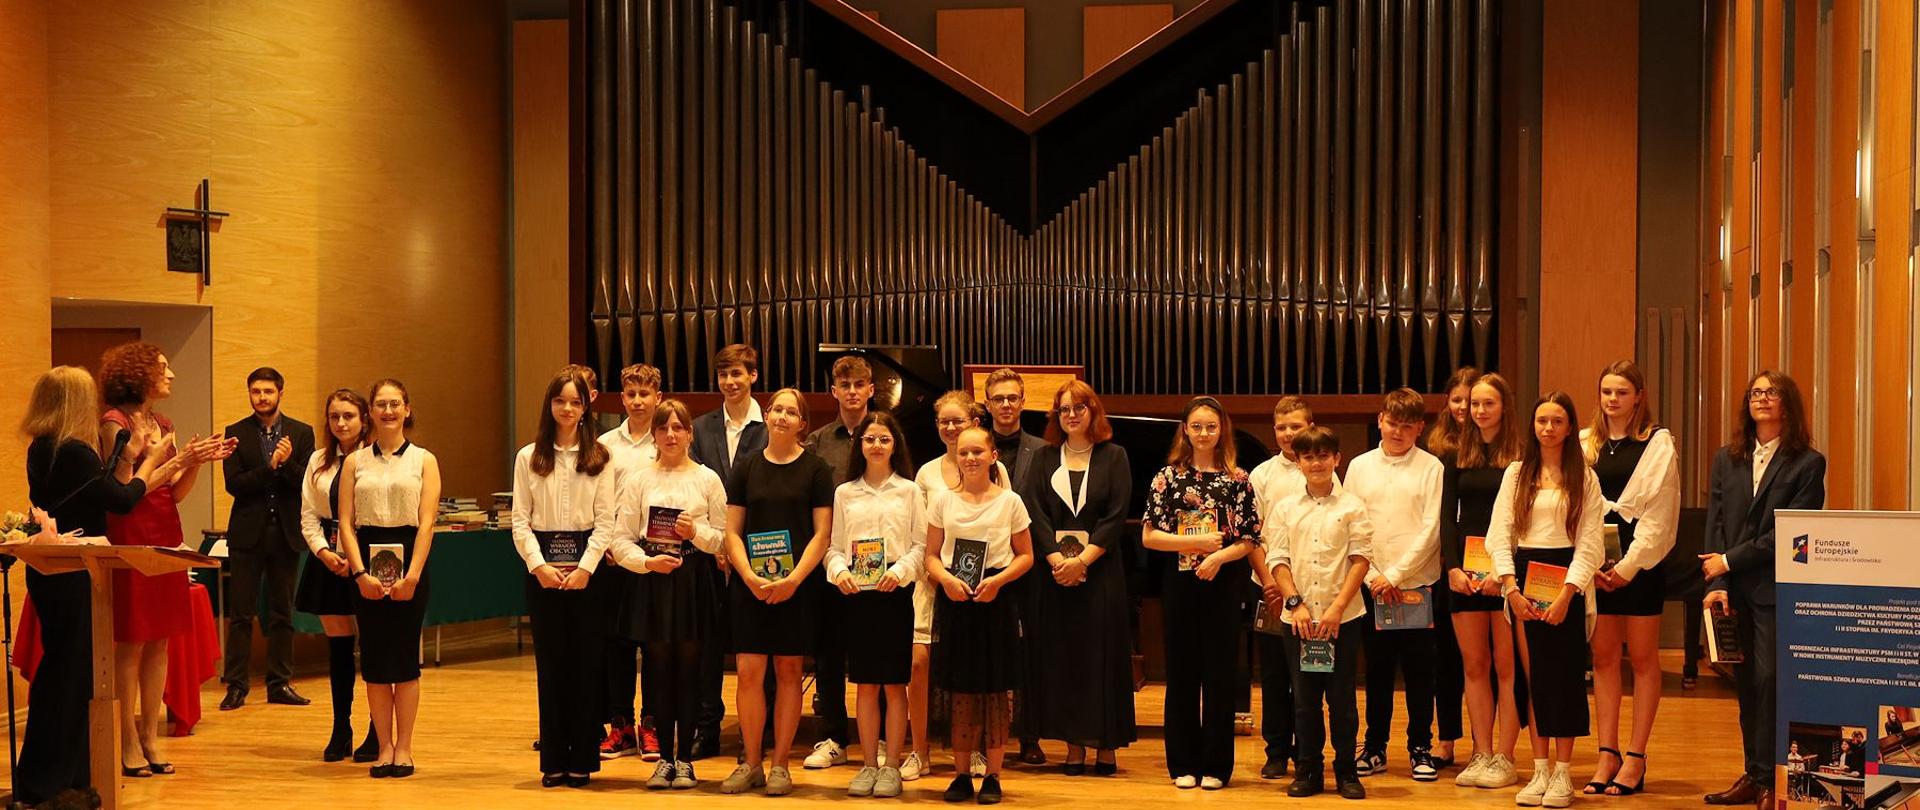 Zdjęcie na sali koncertowej. Na pierwszym planie publiczność. Uczniowie wyróżnienie stoją w dwóch rzędach trzymając w ręku nagrody książkowe. Z lewej strony stoi dyrekcja klaszcząc w dłonie. W tle za uczniami organy oraz fortepian, z lewej strony baner unijny.